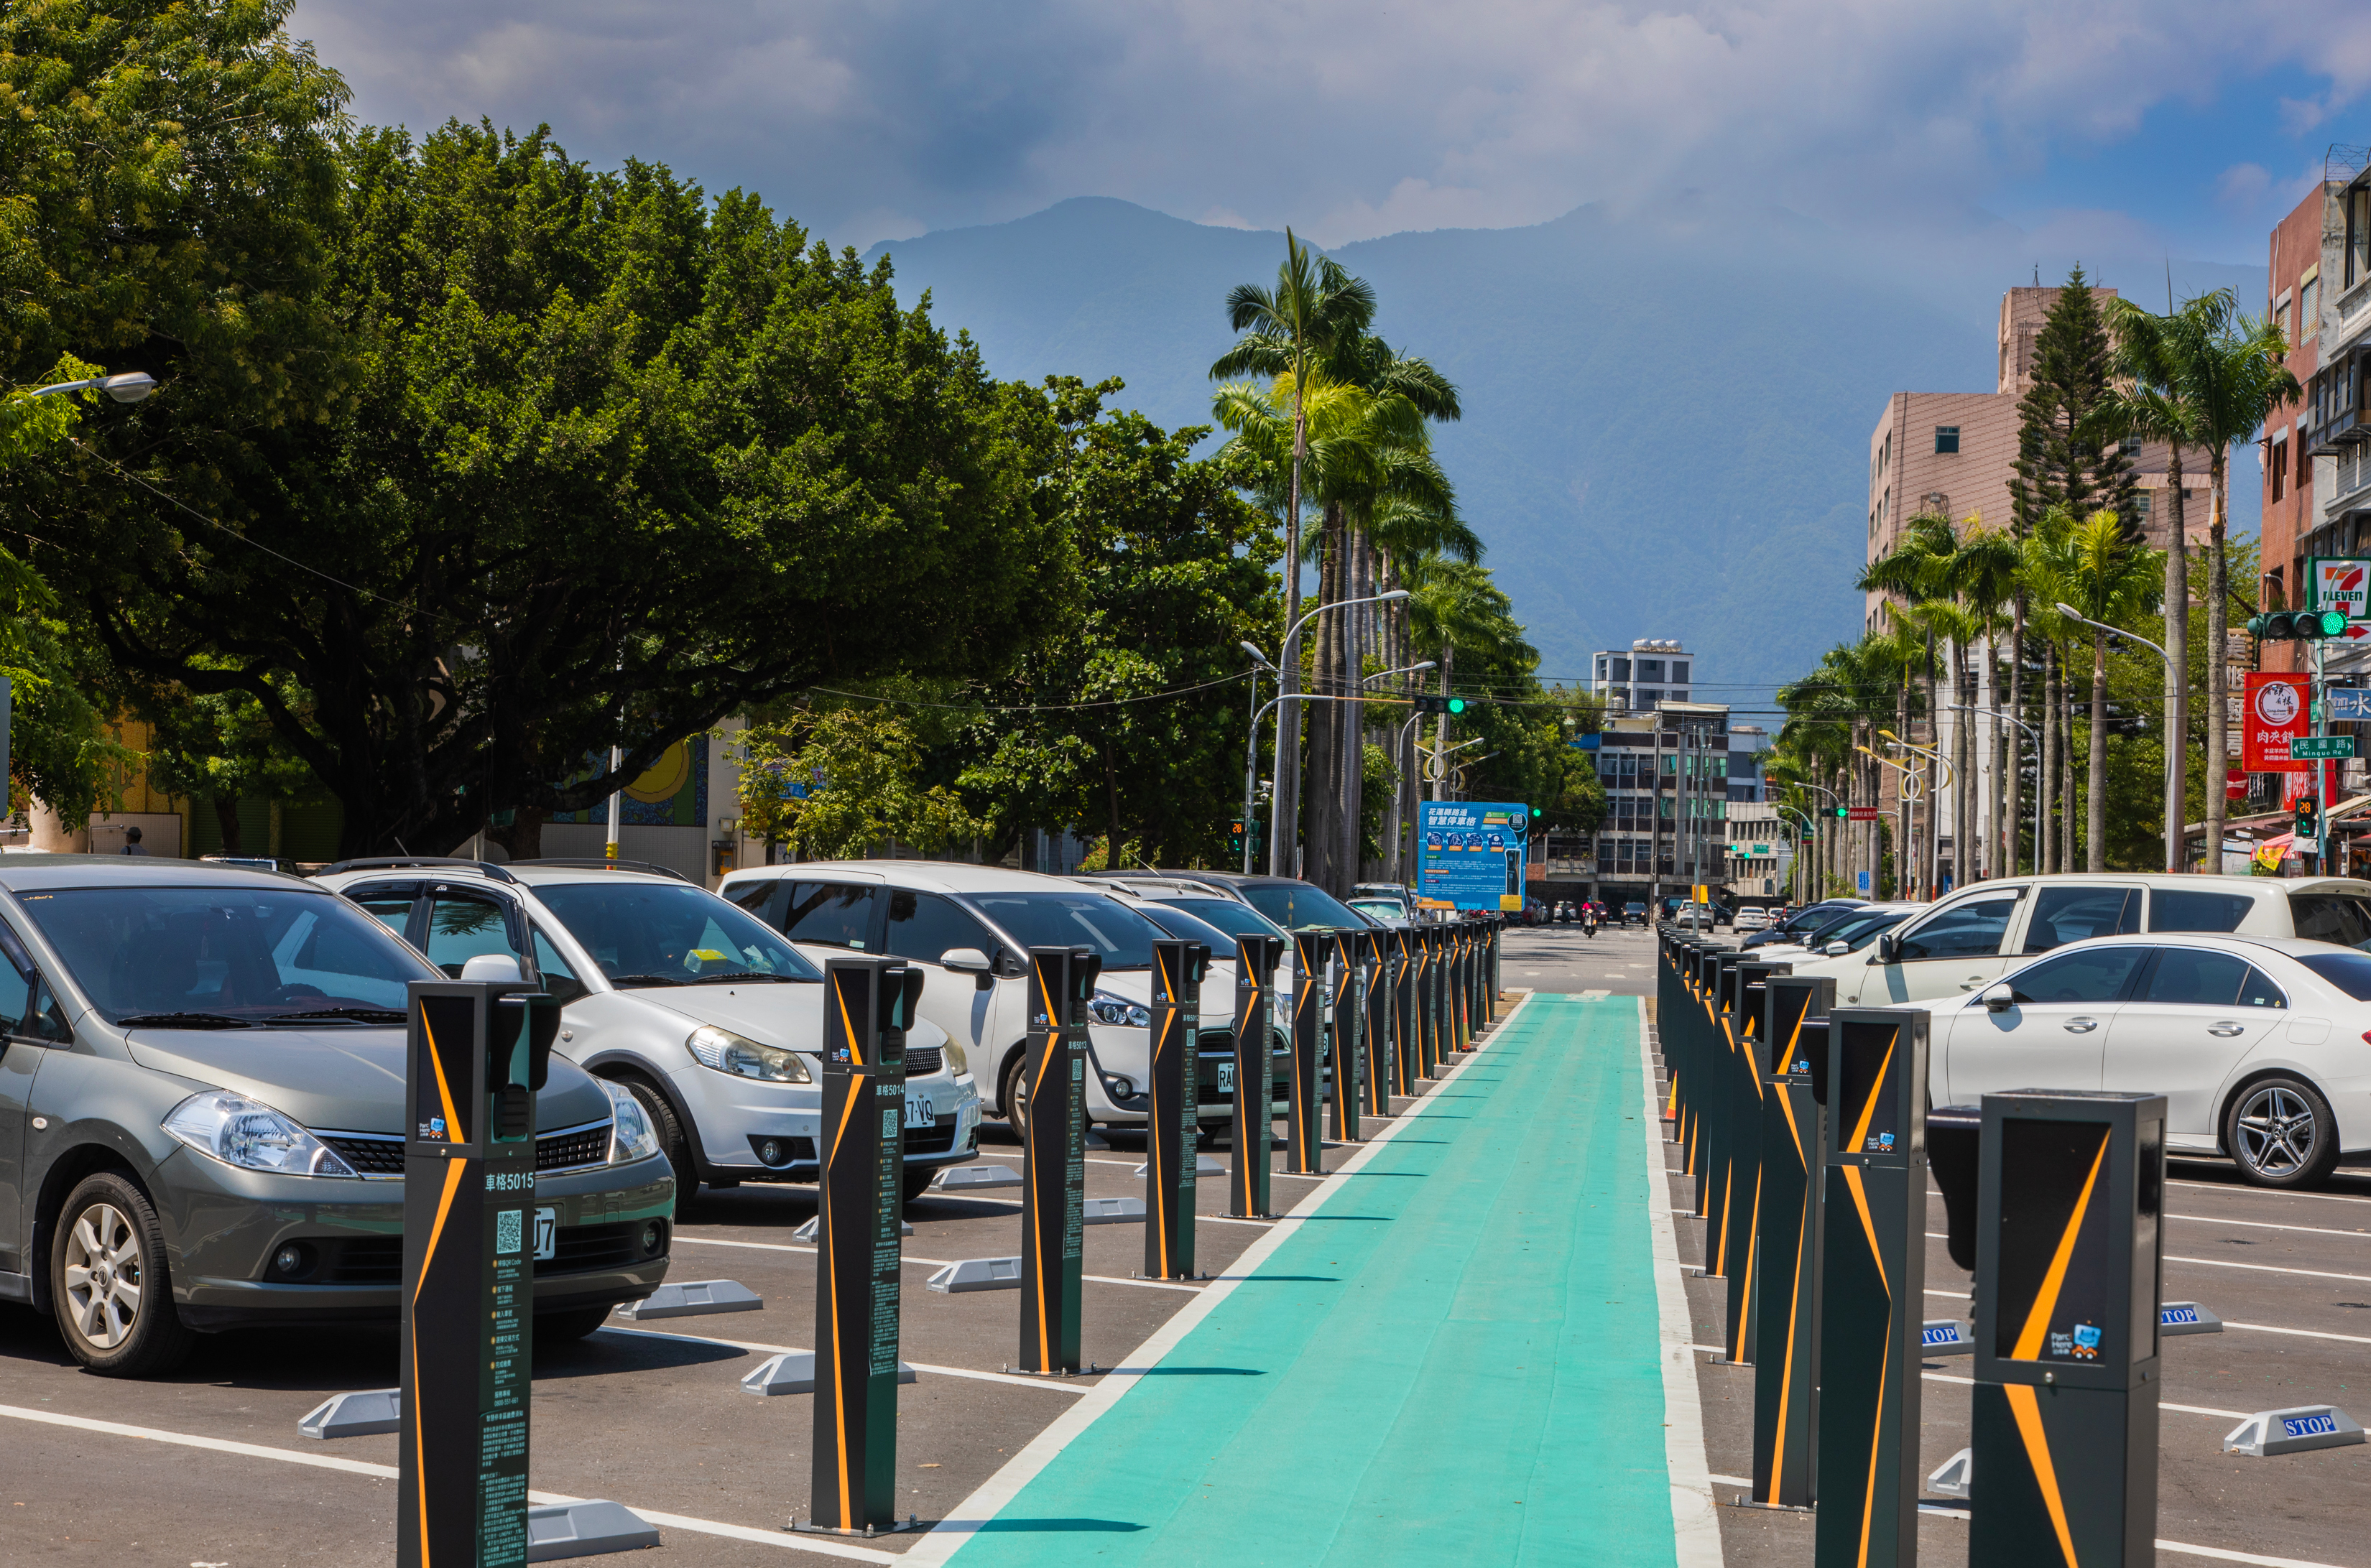 中兴保全科技专为城市打造的智慧停车系统，就是以太阳能储电及无电力线设计的智慧停车柱。中保科提供